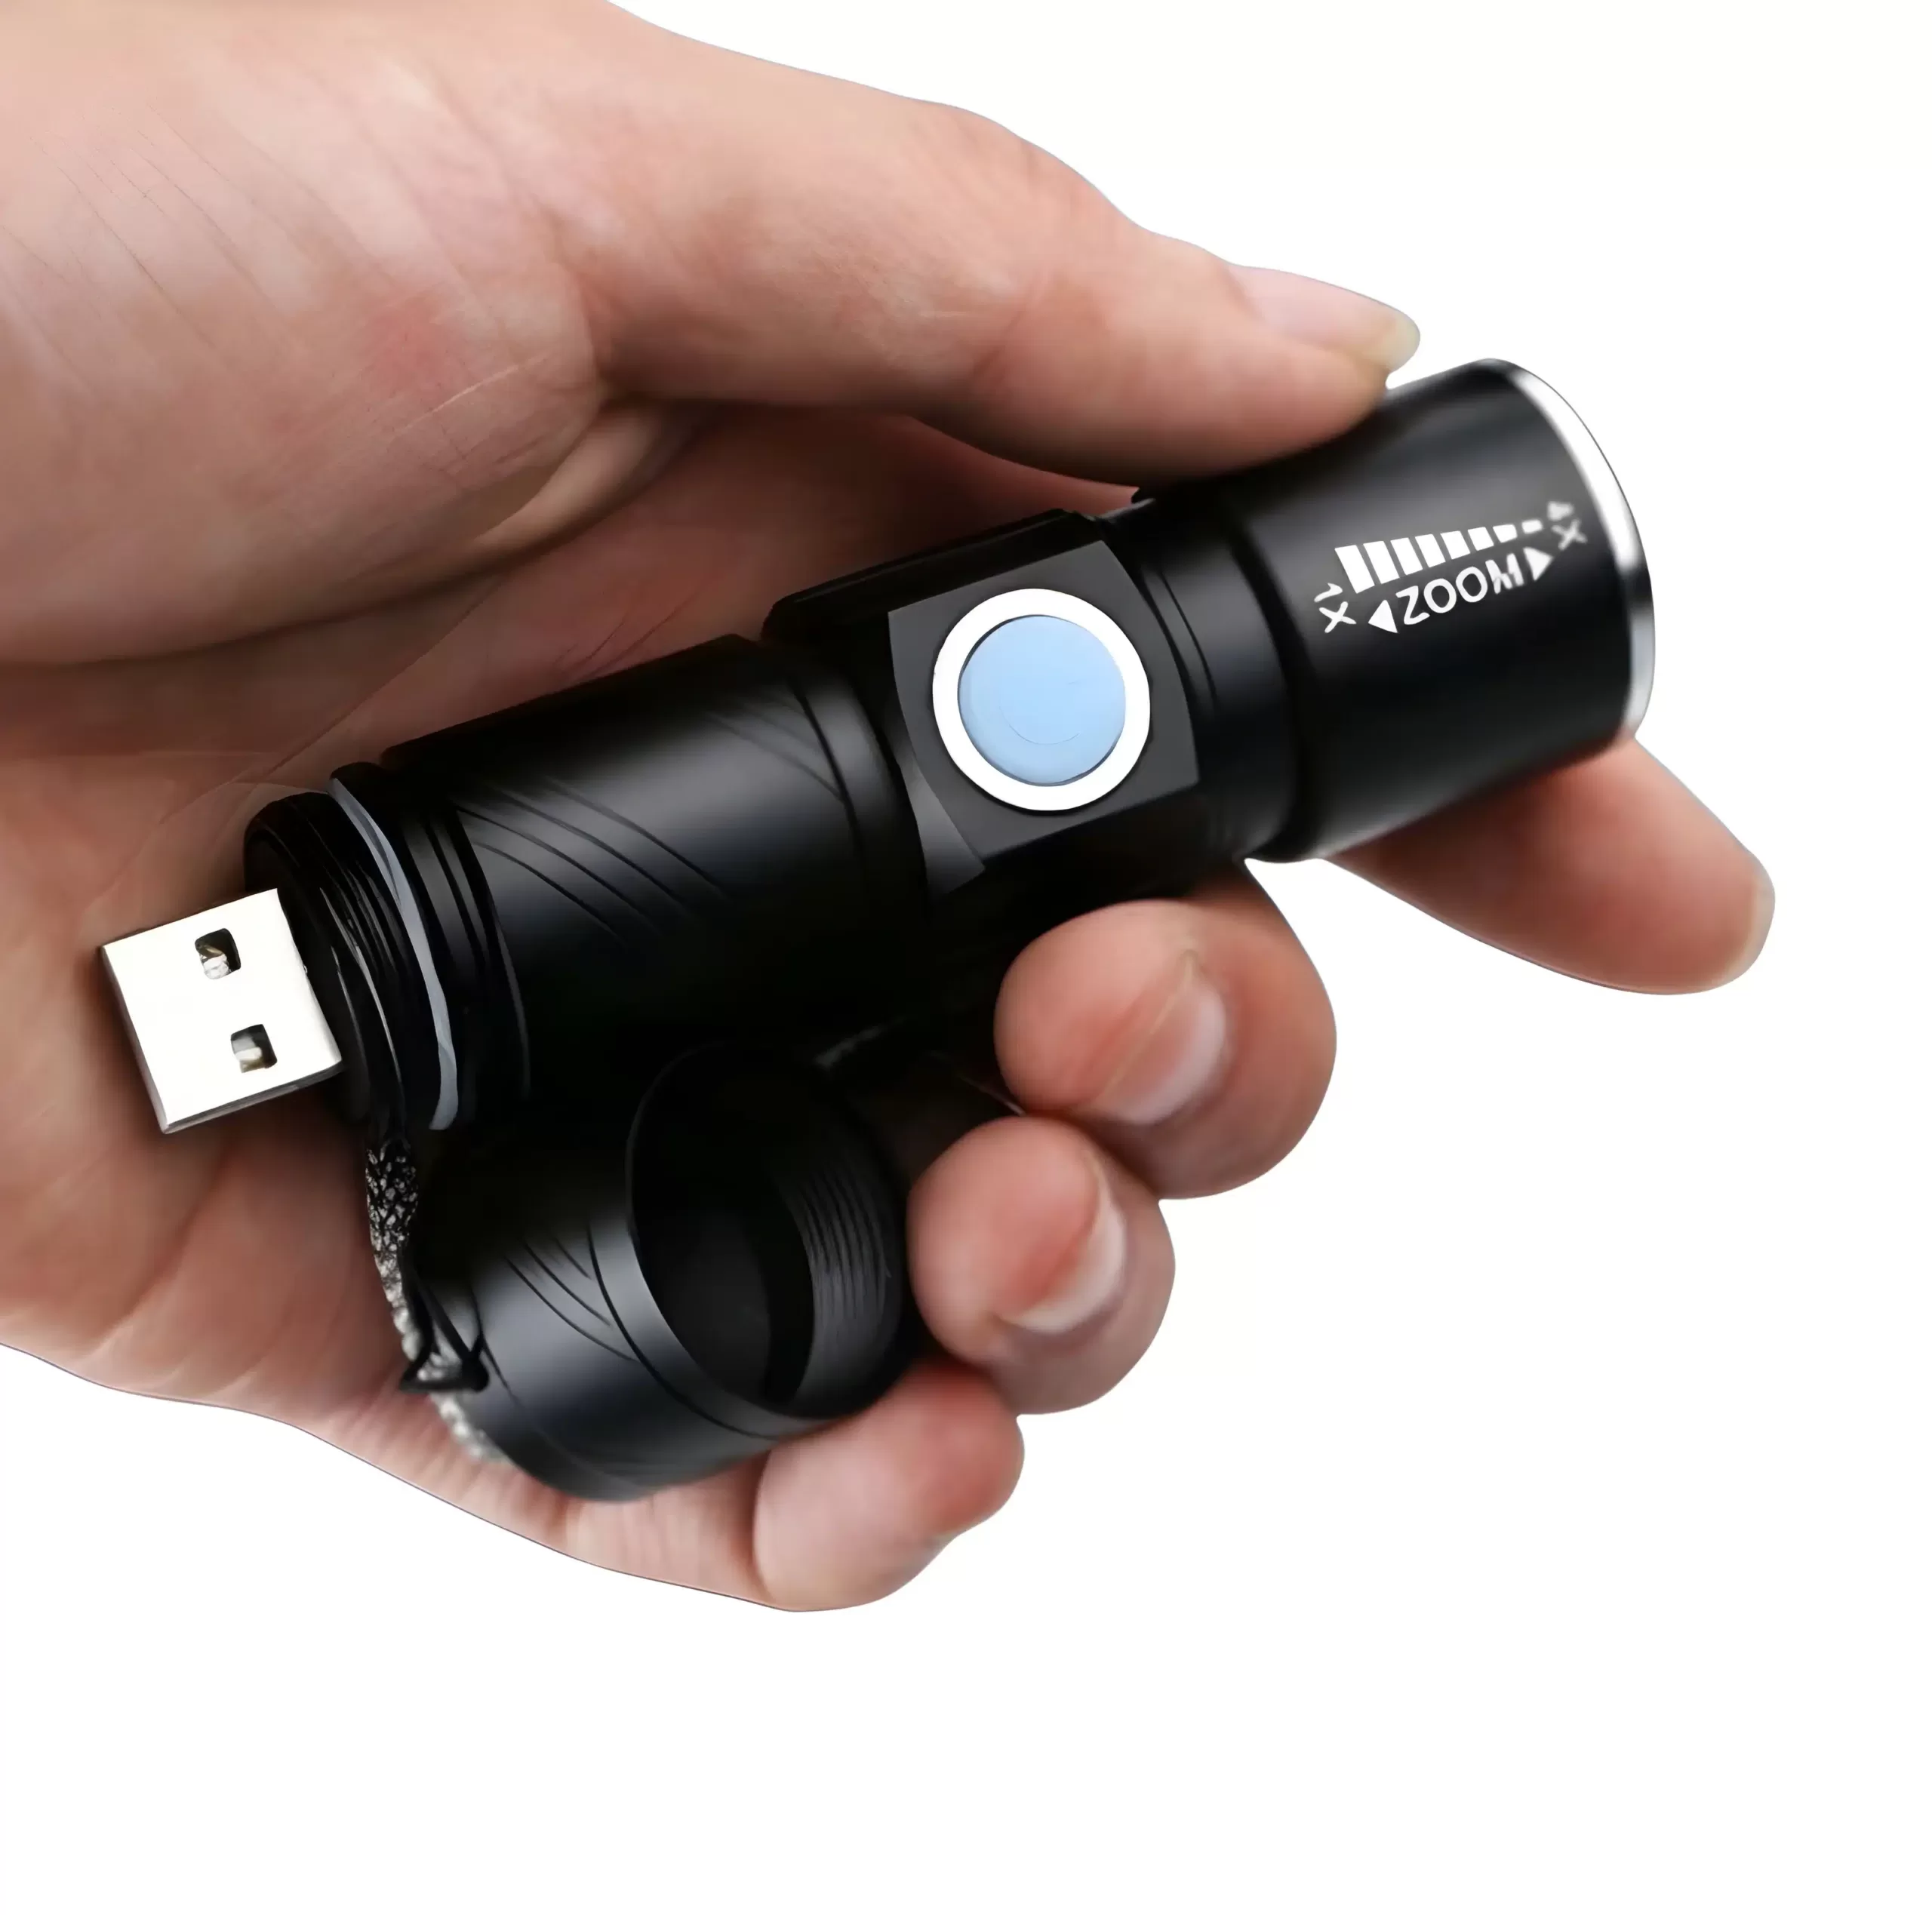 Nouvelle usb handy puissant led, lampe de poche portable Mini